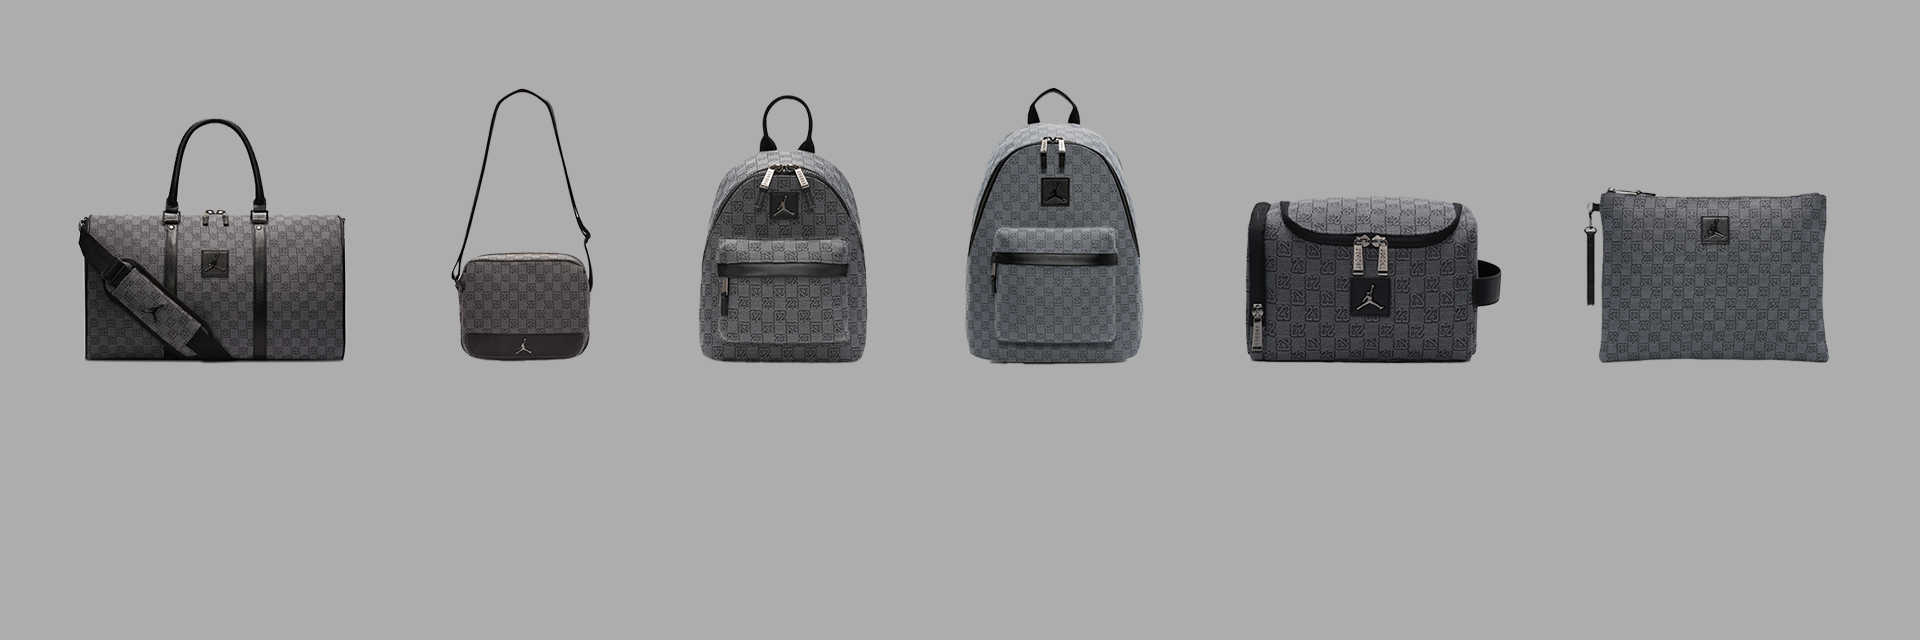 Jordan Monogram Bags - new color online!